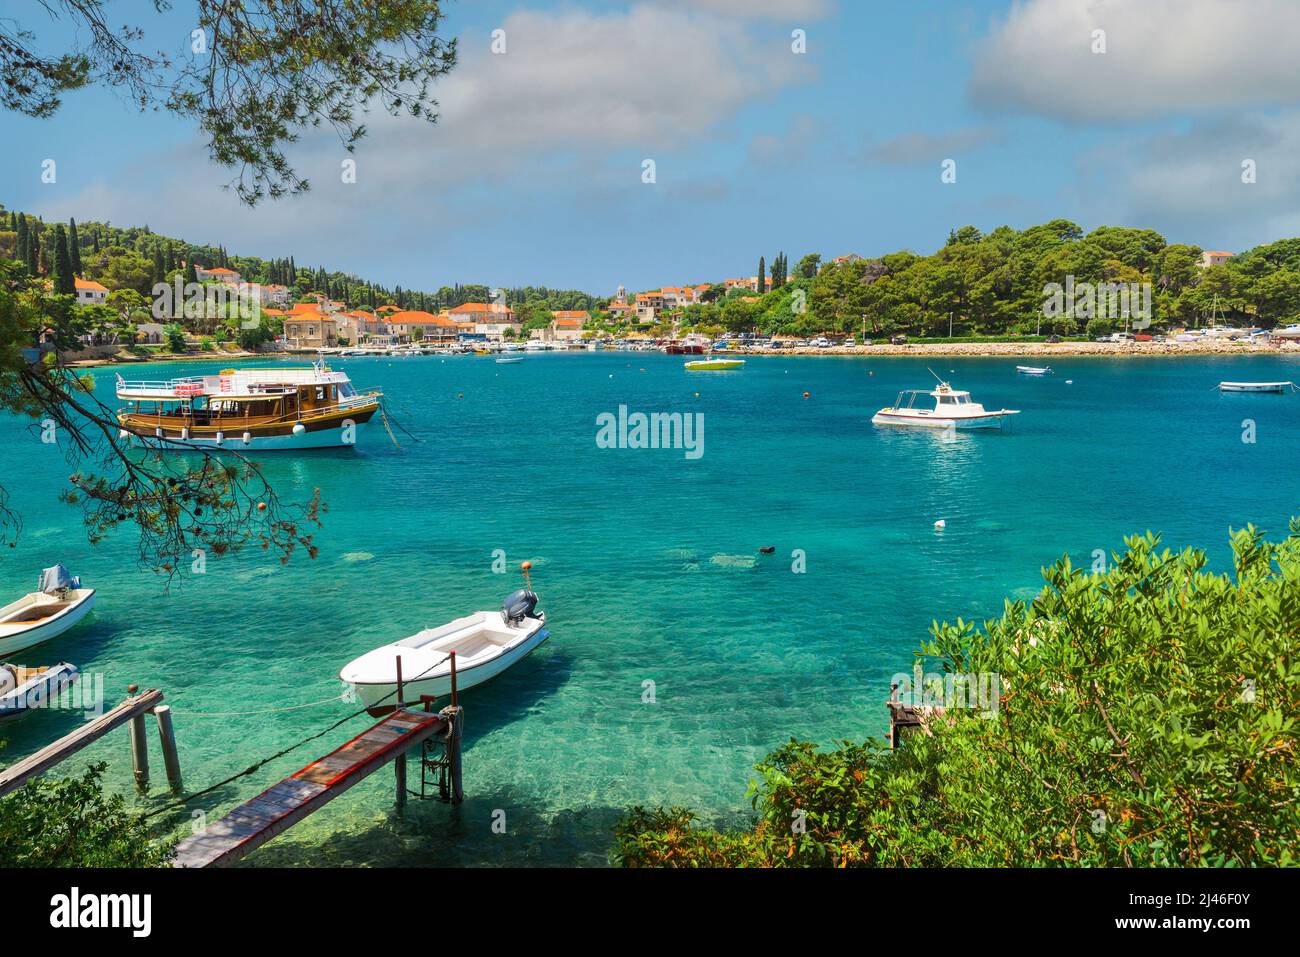 Station touristique populaire Cavtat ville près de Dubrovnik en Croatie avec baie d'eau turquoise. Concept de vacances d'été Banque D'Images